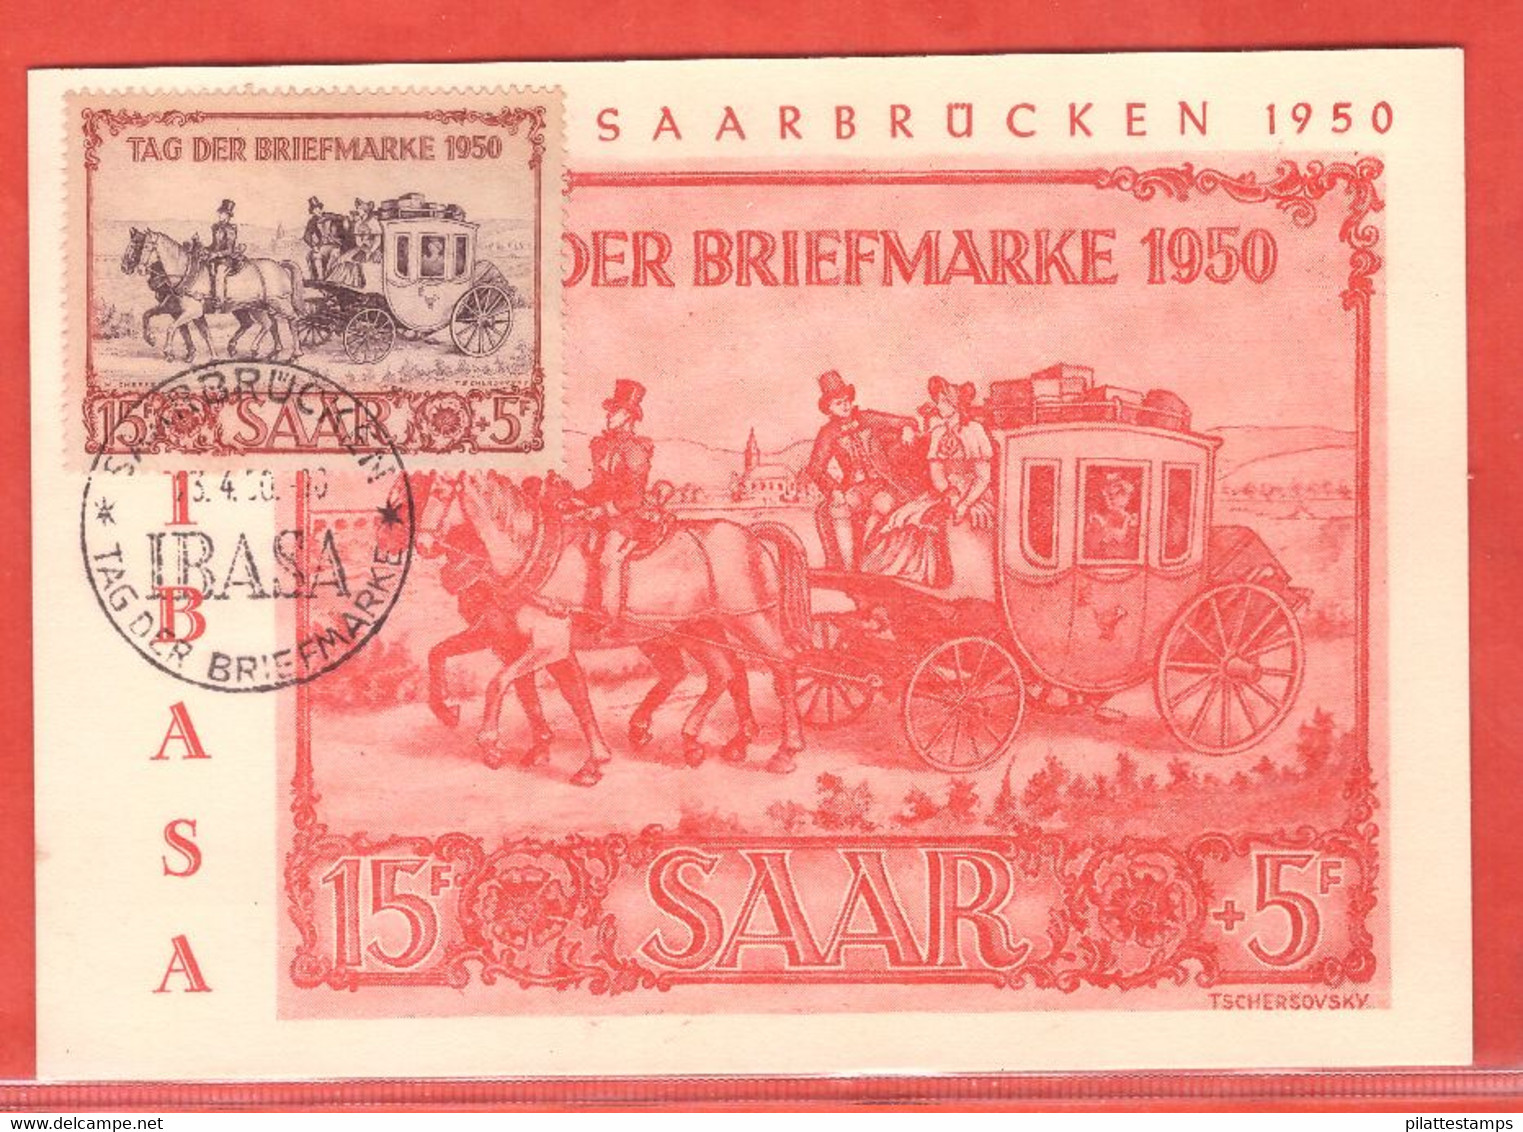 SARRE CARTE MAXIMUM JOURNEE DU TIMBRE DE 1950 DE SARREBRUCK - Maximum Cards